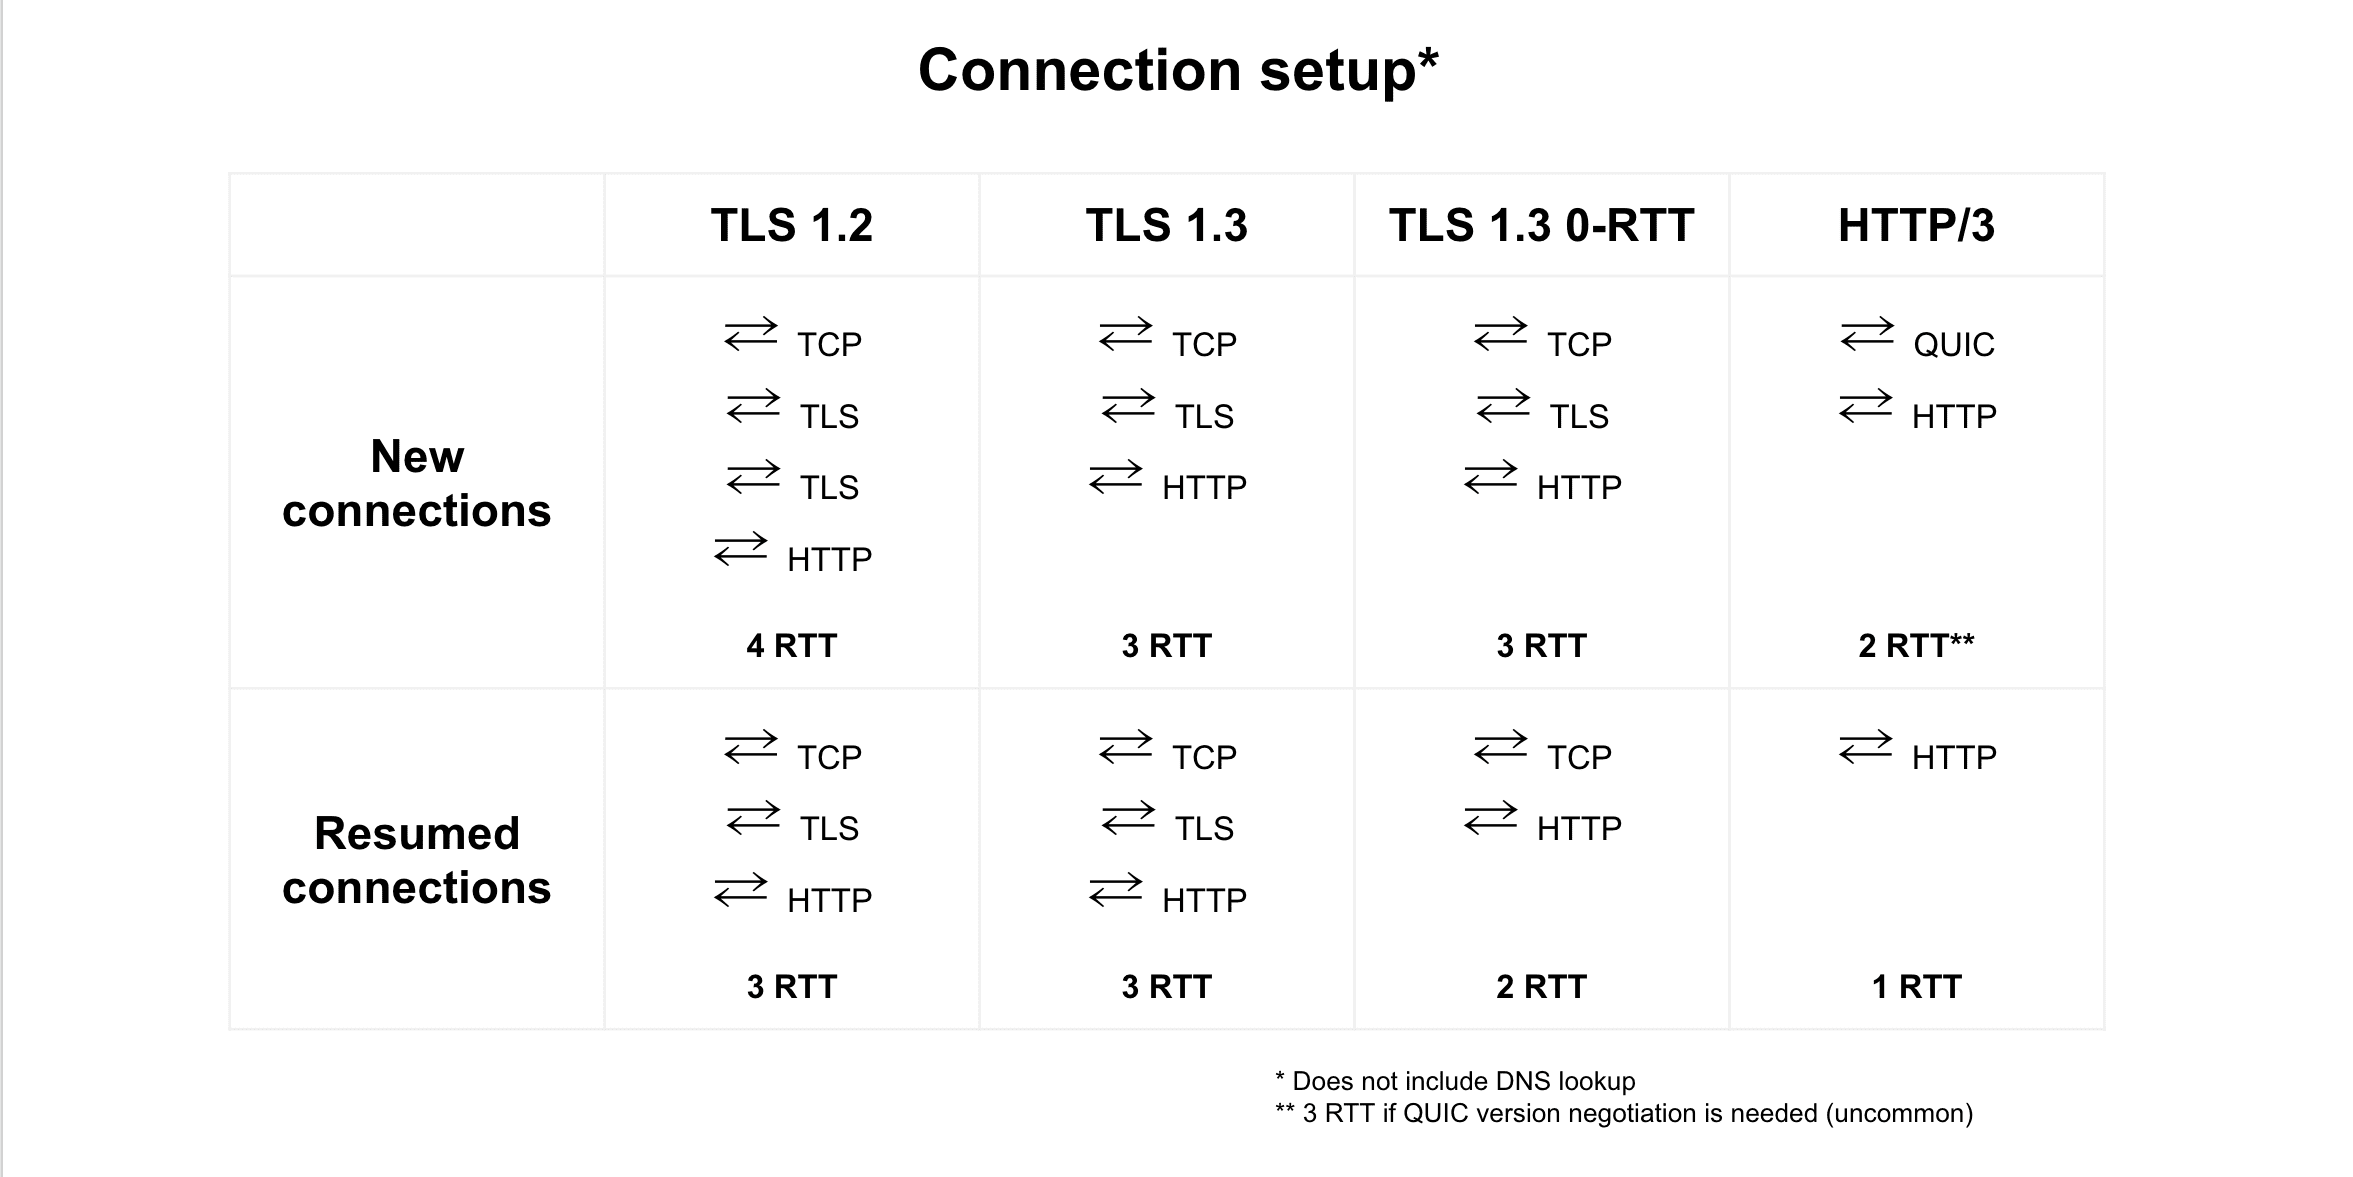 การเปรียบเทียบการกลับมาเชื่อมต่ออีกครั้งระหว่าง TLS 1.2, TLS 1.3, TLS 1.3 0-RTT และ HTTP/3